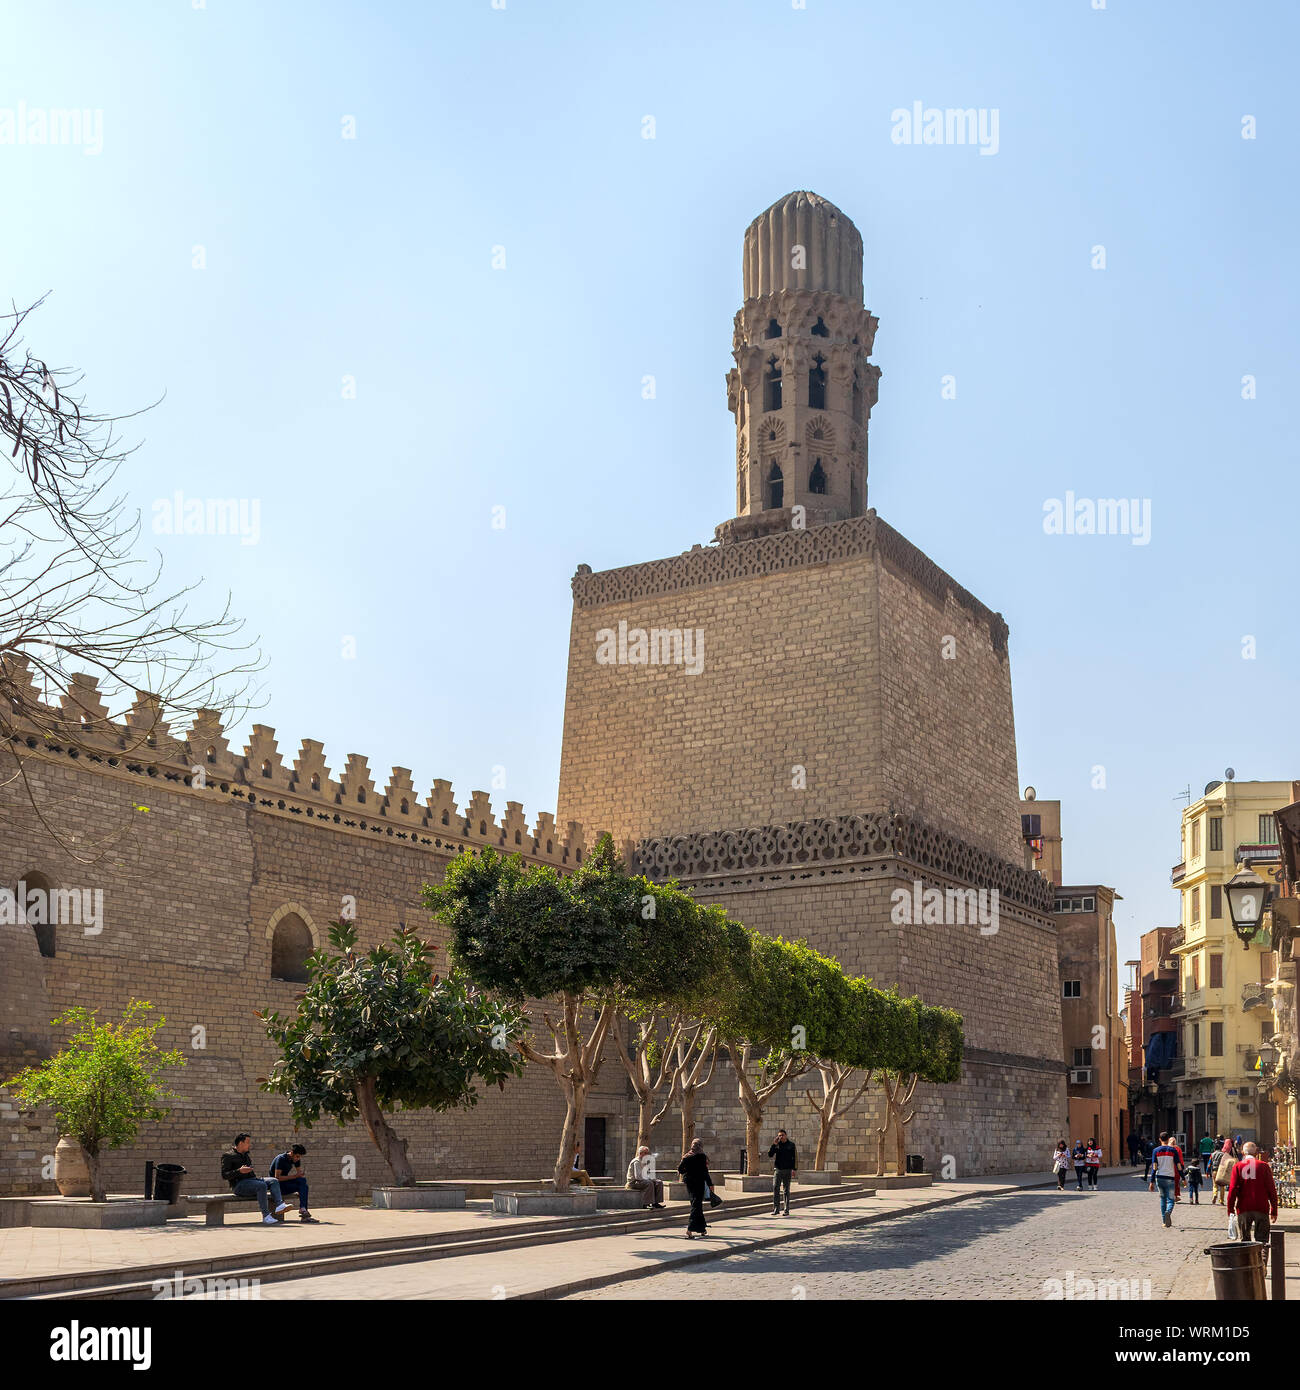 Le Caire, Egypte - 21 mars 2015 : Minaret de la mosquée Al Hakim historique connue comme la Mosquée éclairée, situé dans la rue de Moez avec la marche des habitants, Vieux Caire Banque D'Images